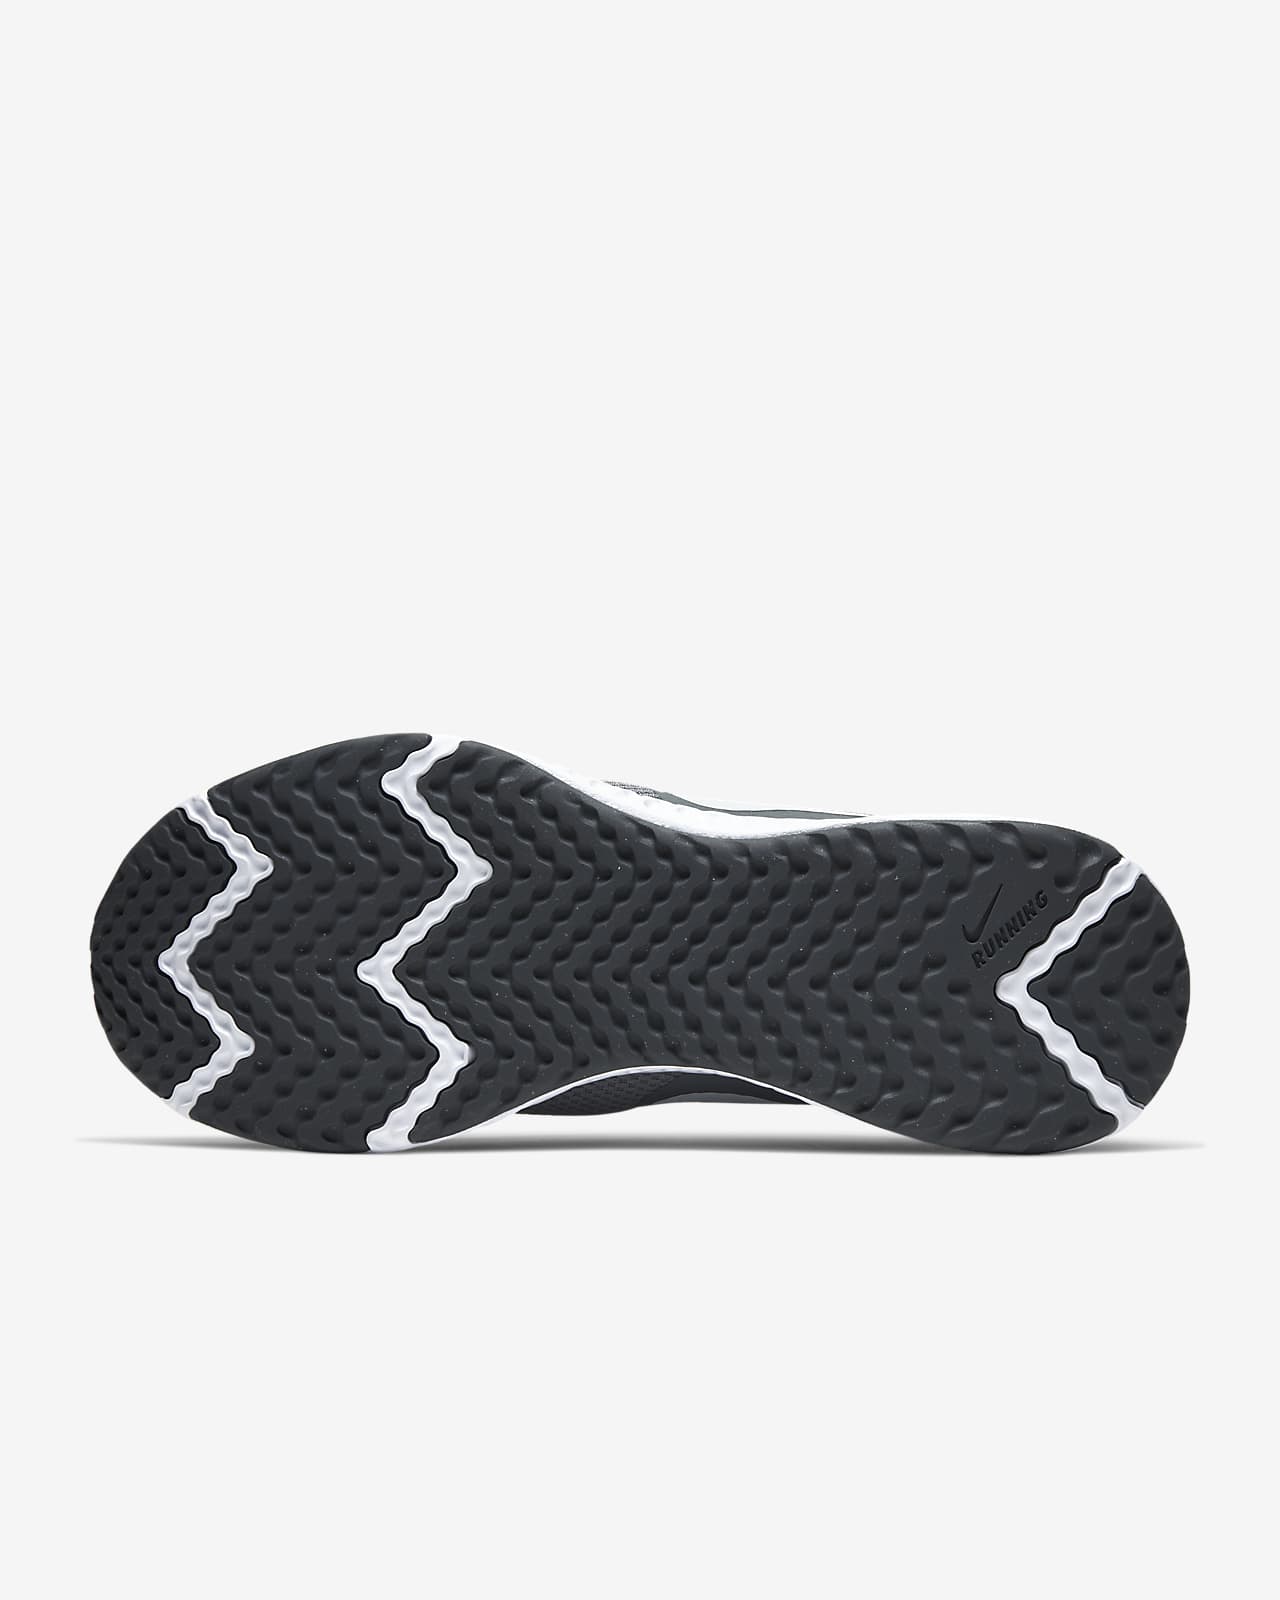 Nike Revolution 5, Zapatillas de Atletismo Hombre, Multicolor Black  Anthracite 001, 43 EU